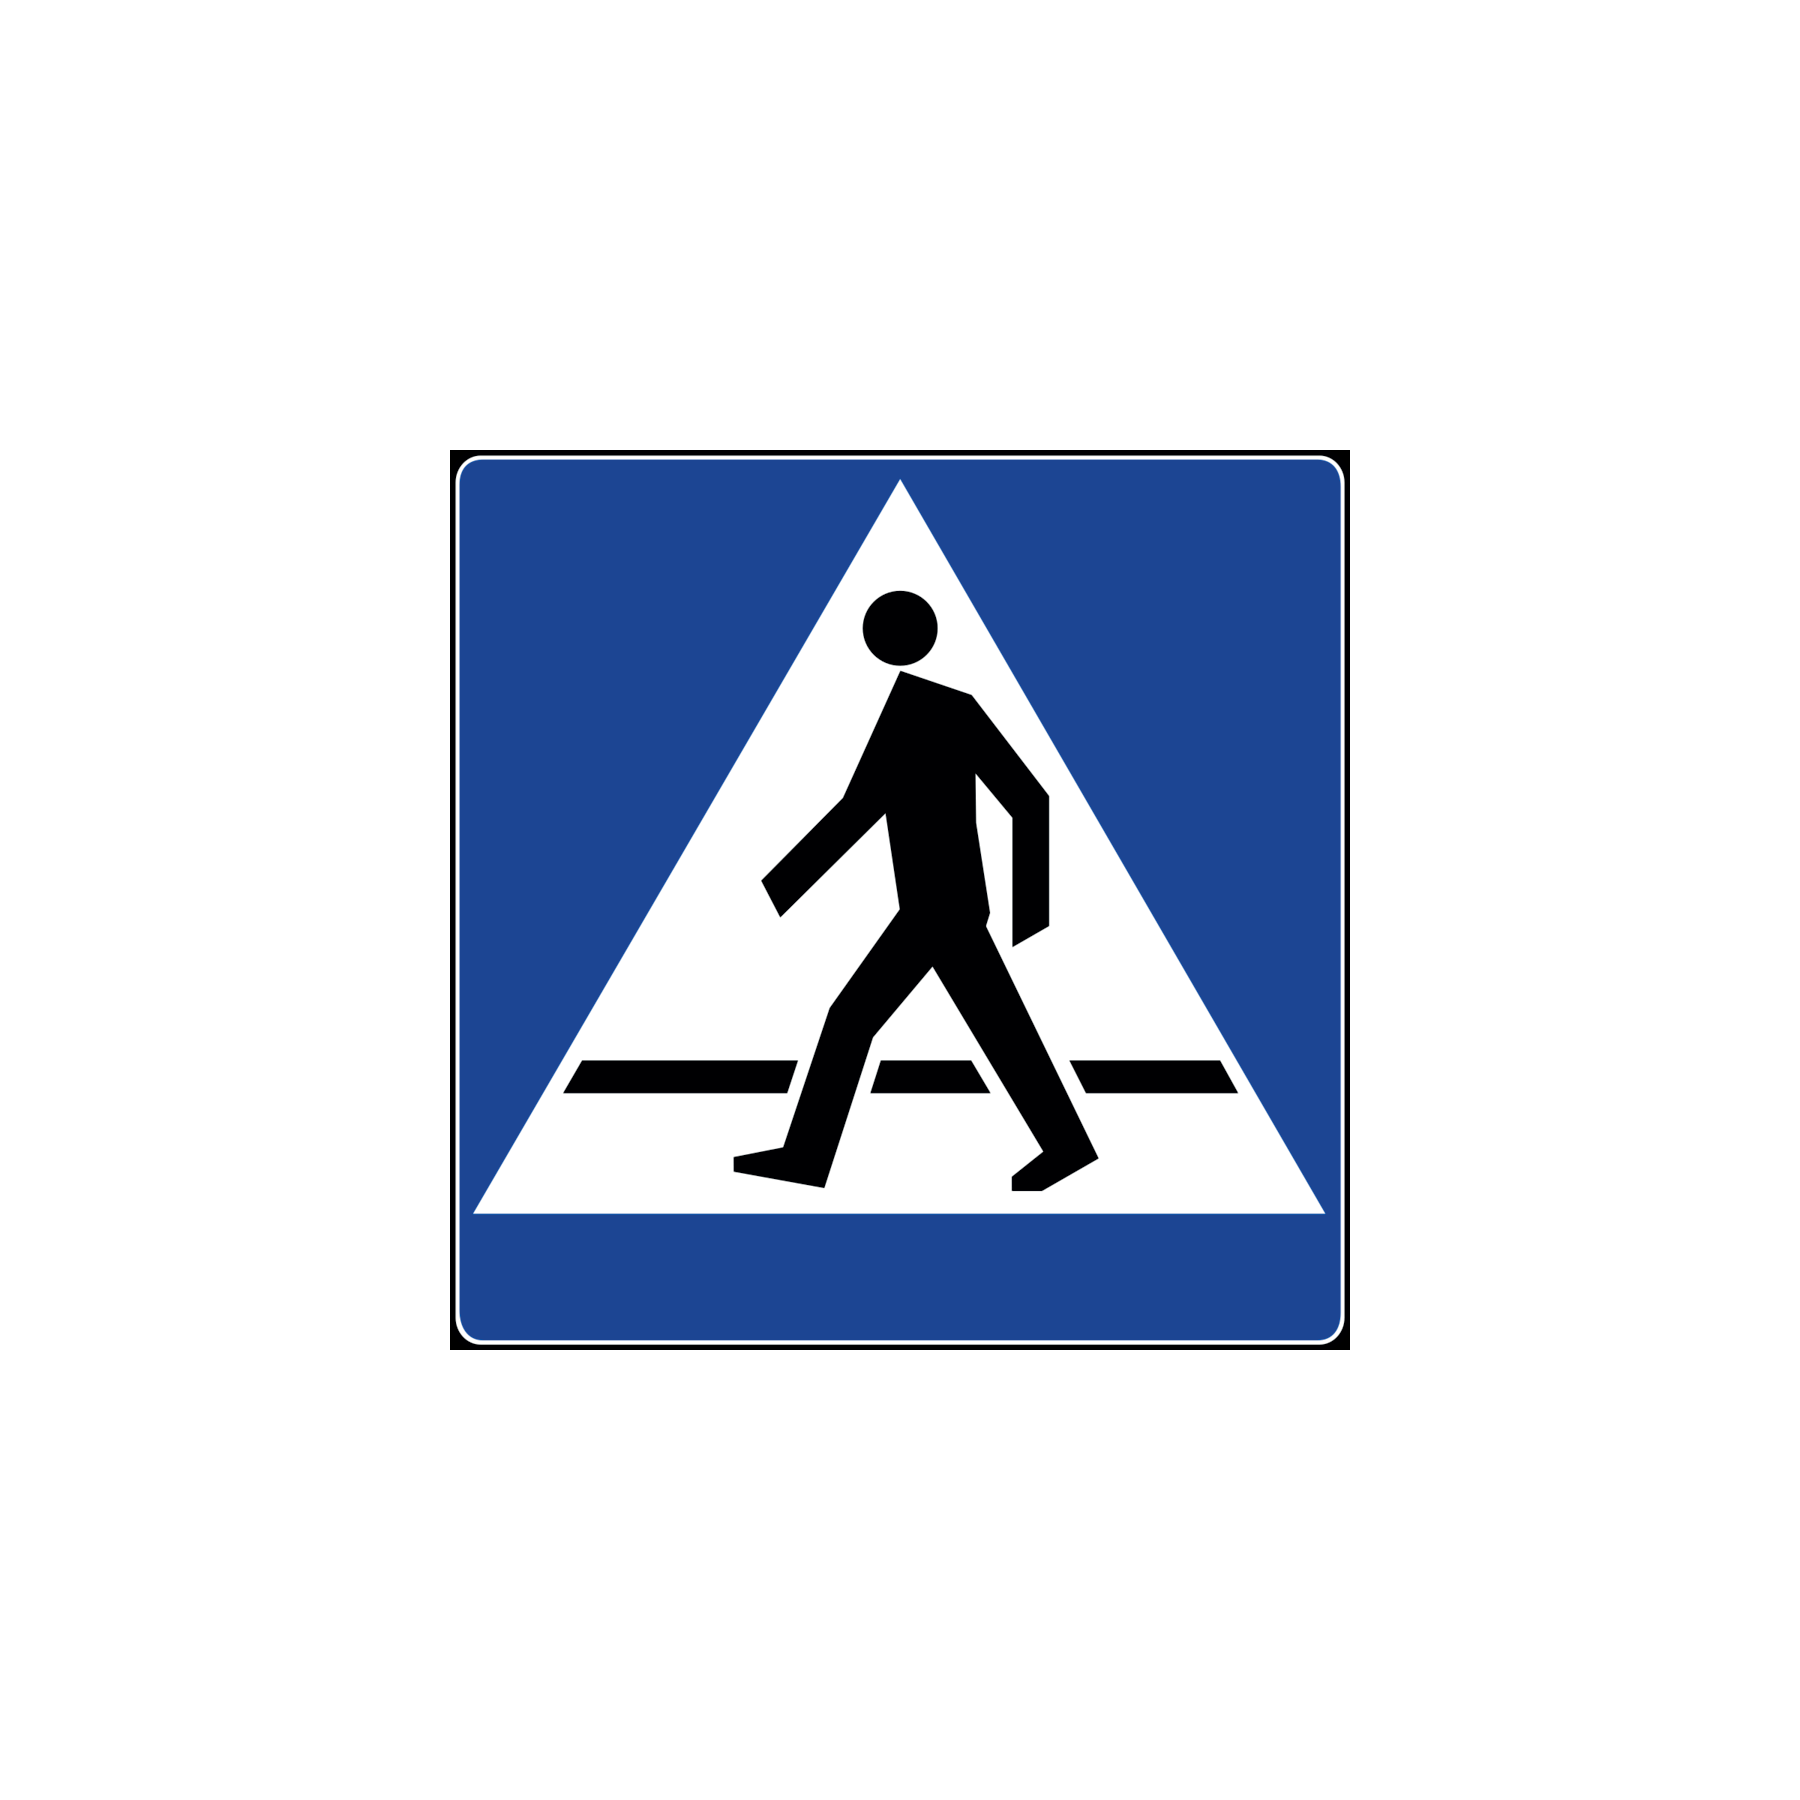 Który znak oznacza przejście dla pieszych?